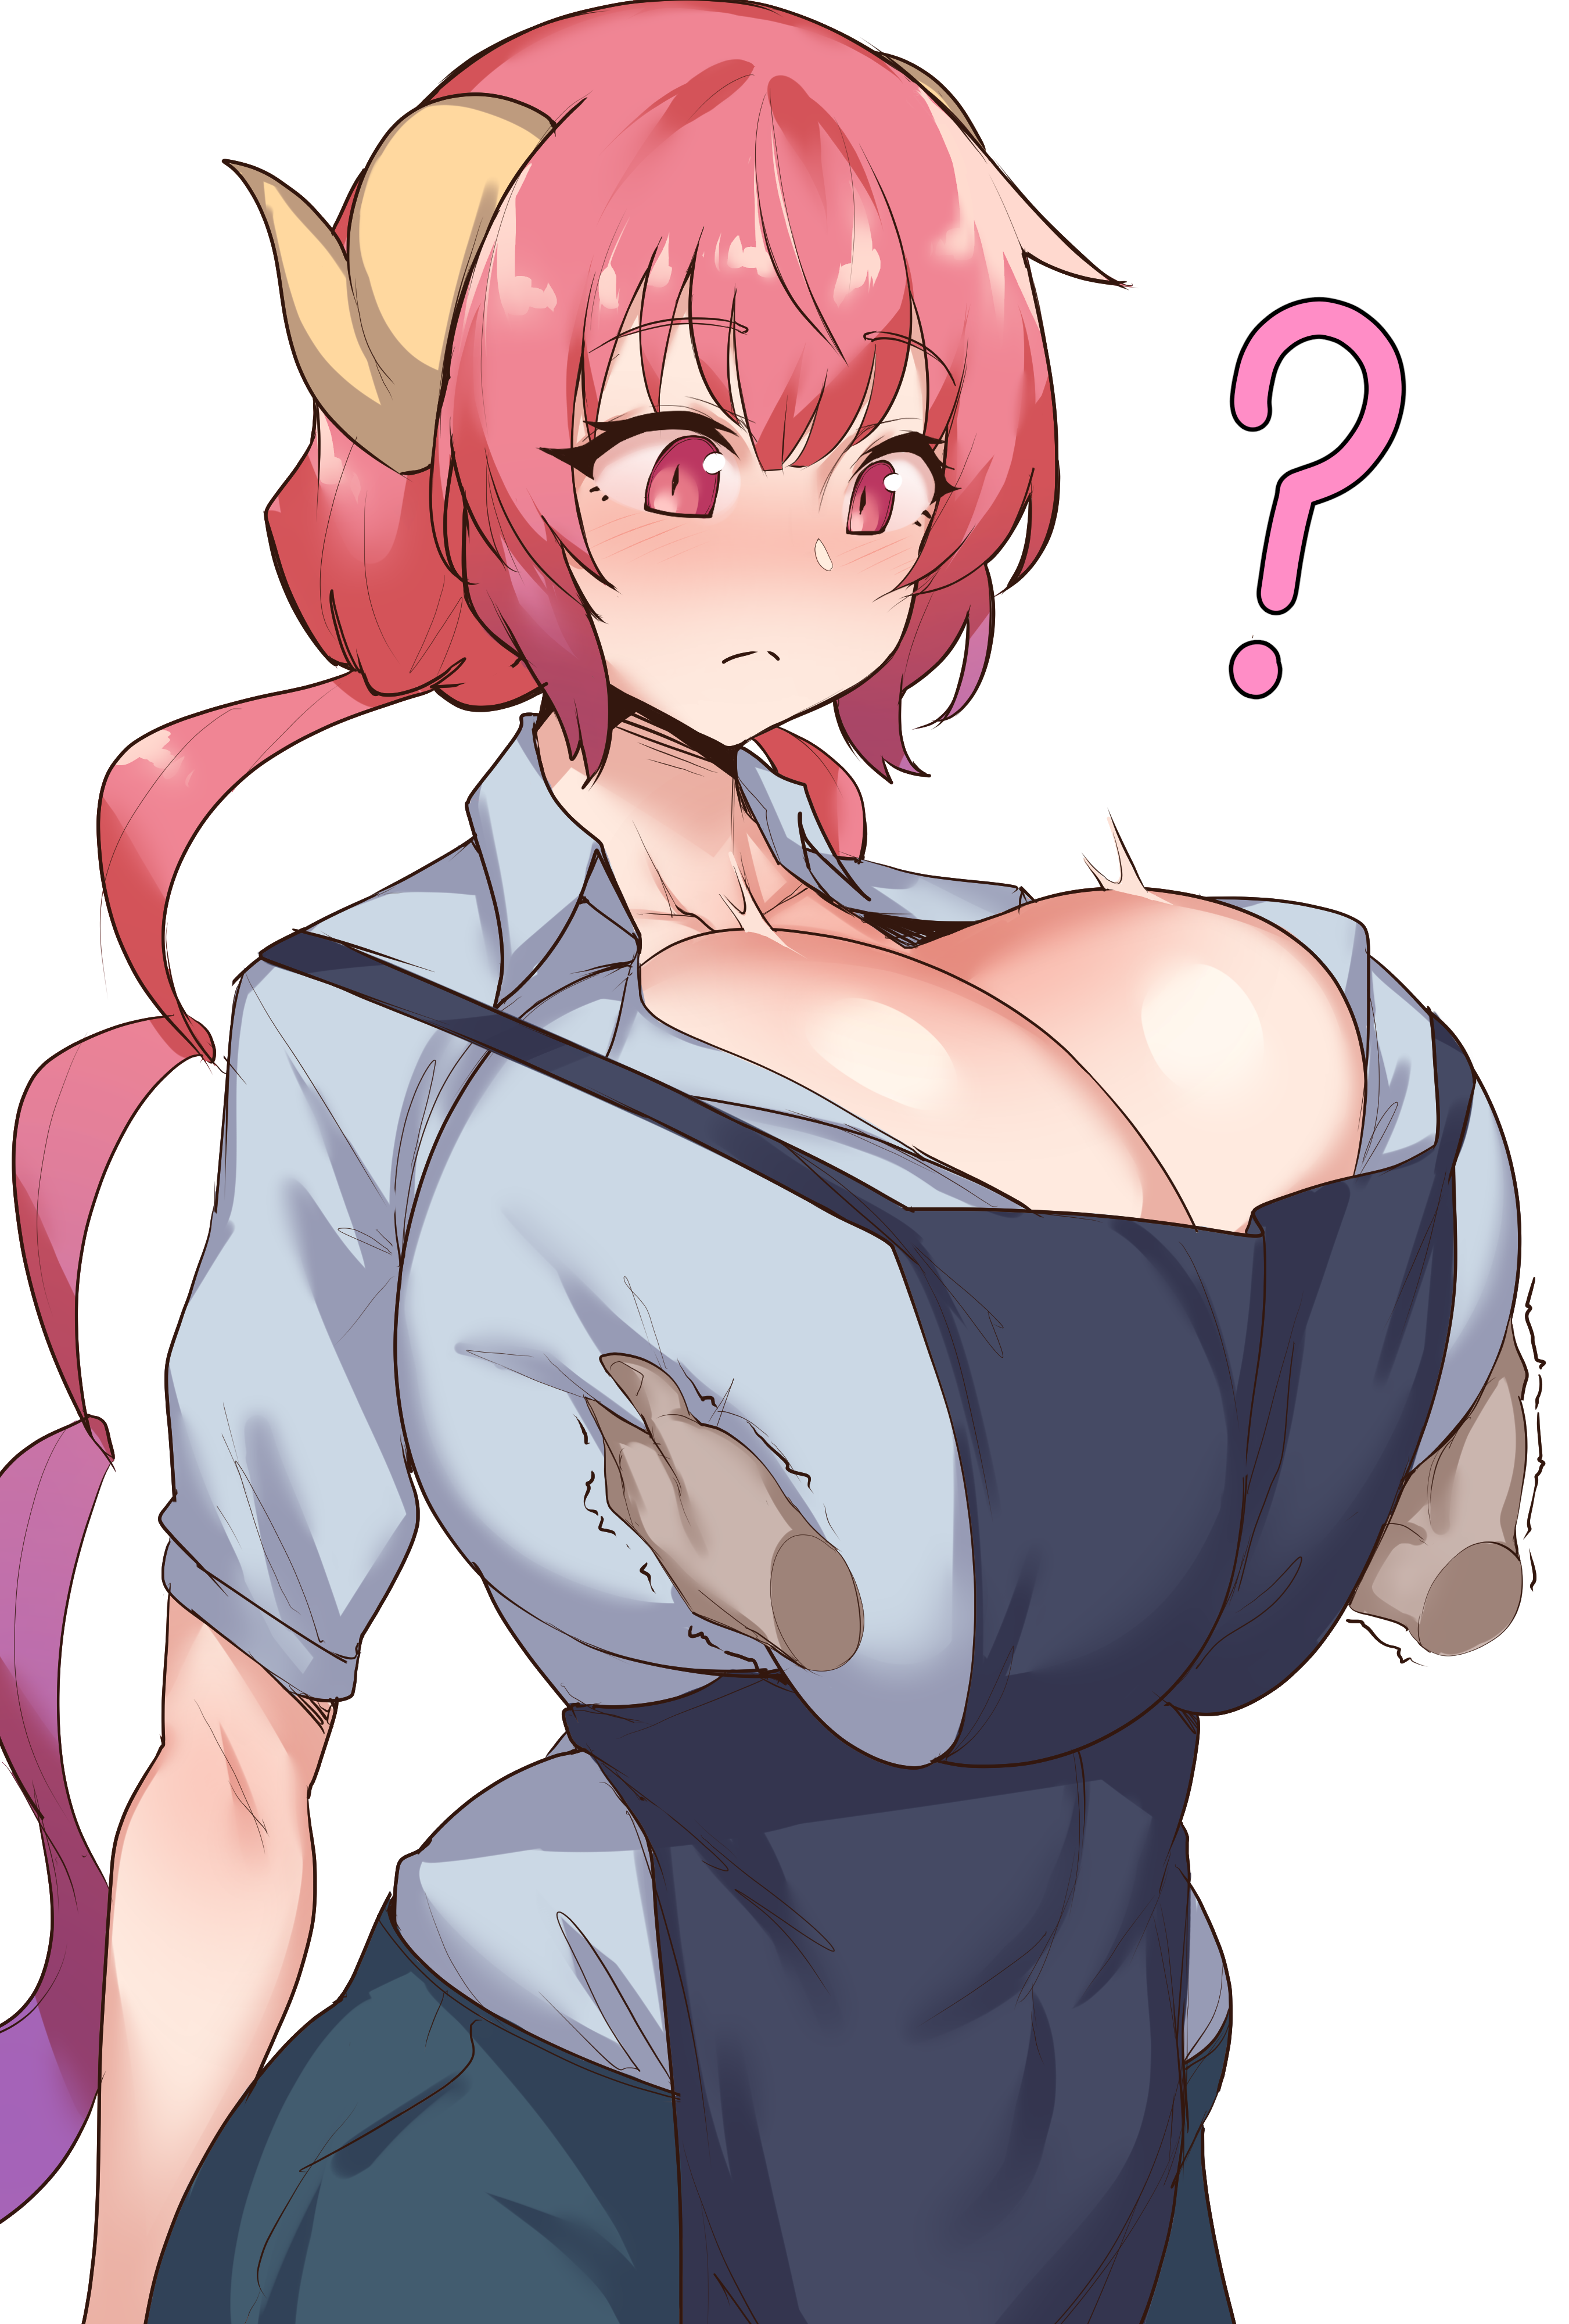 Kobayashi maid dragon ilulu boobs grow